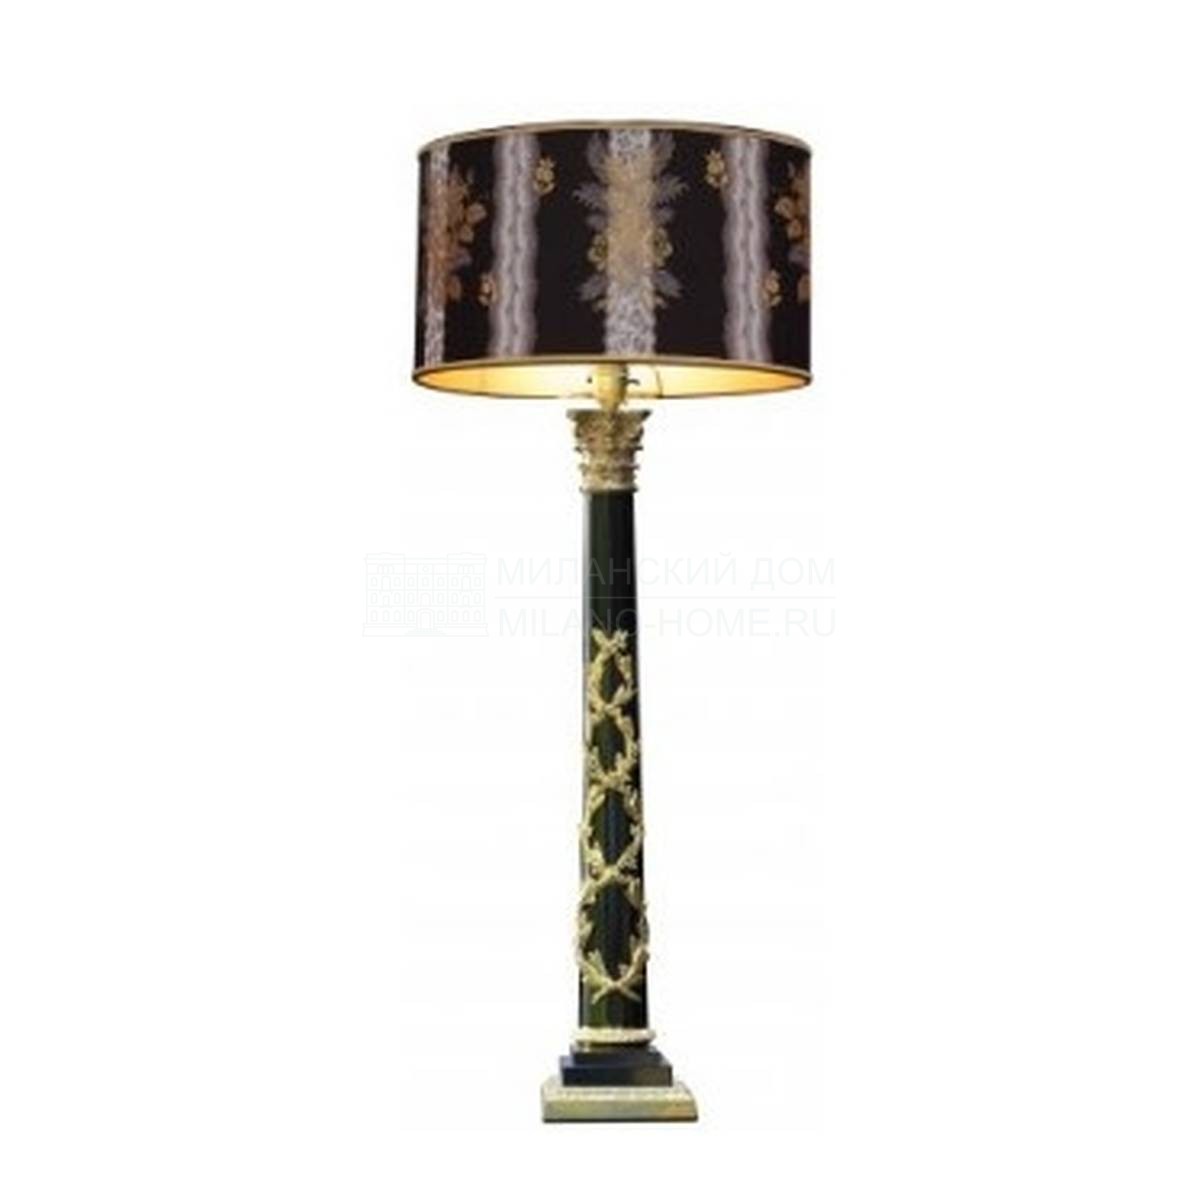 Настольная лампа Regency corinthian column lamp 803B из Франции фабрики MOISSONNIER